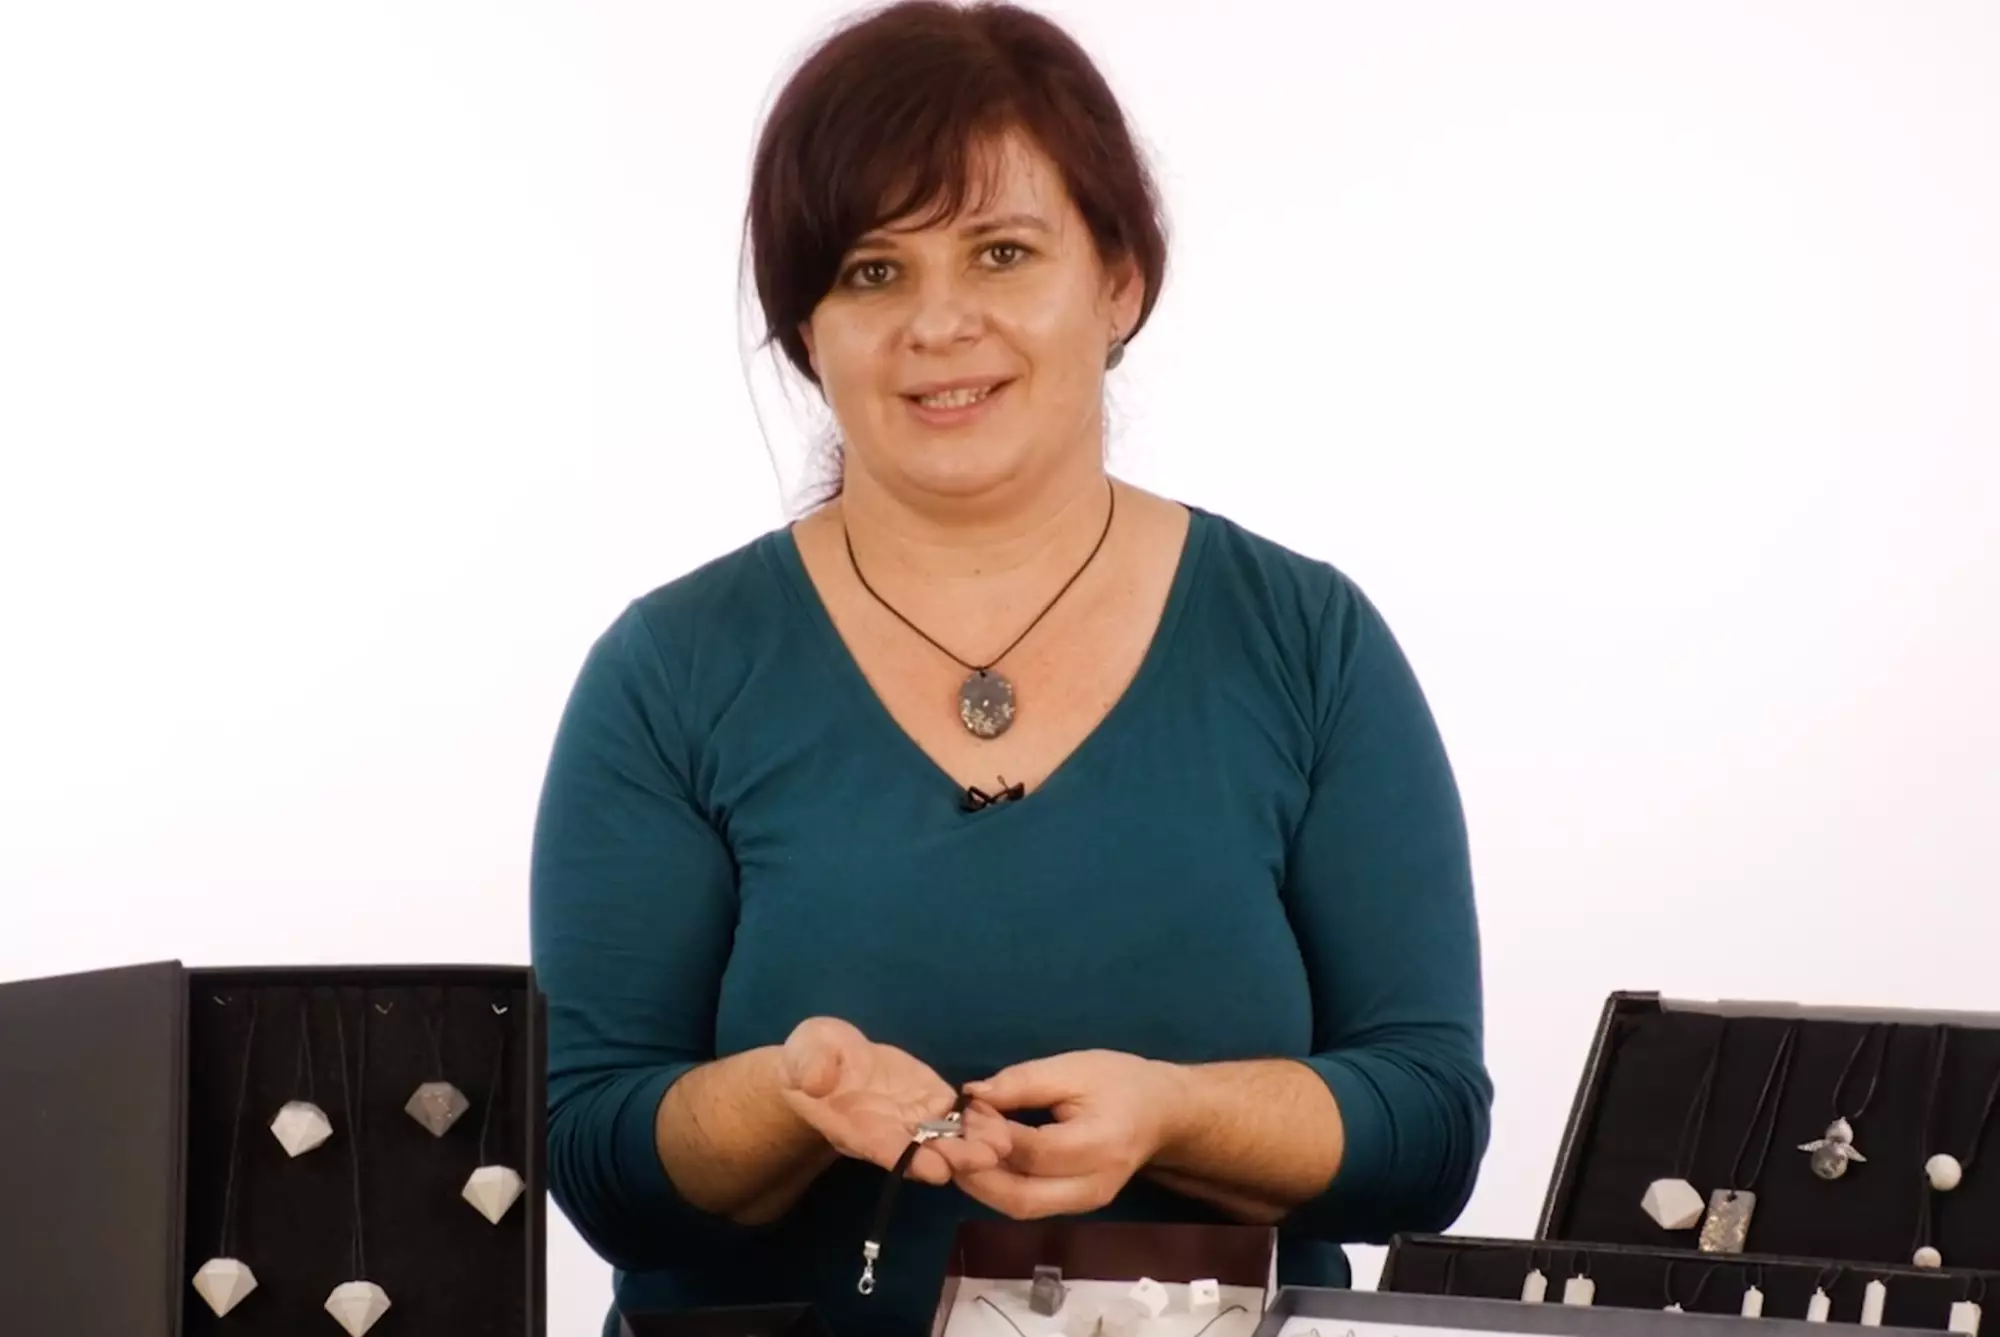 Hana Kylarová: Kurz výroby betonových šperků